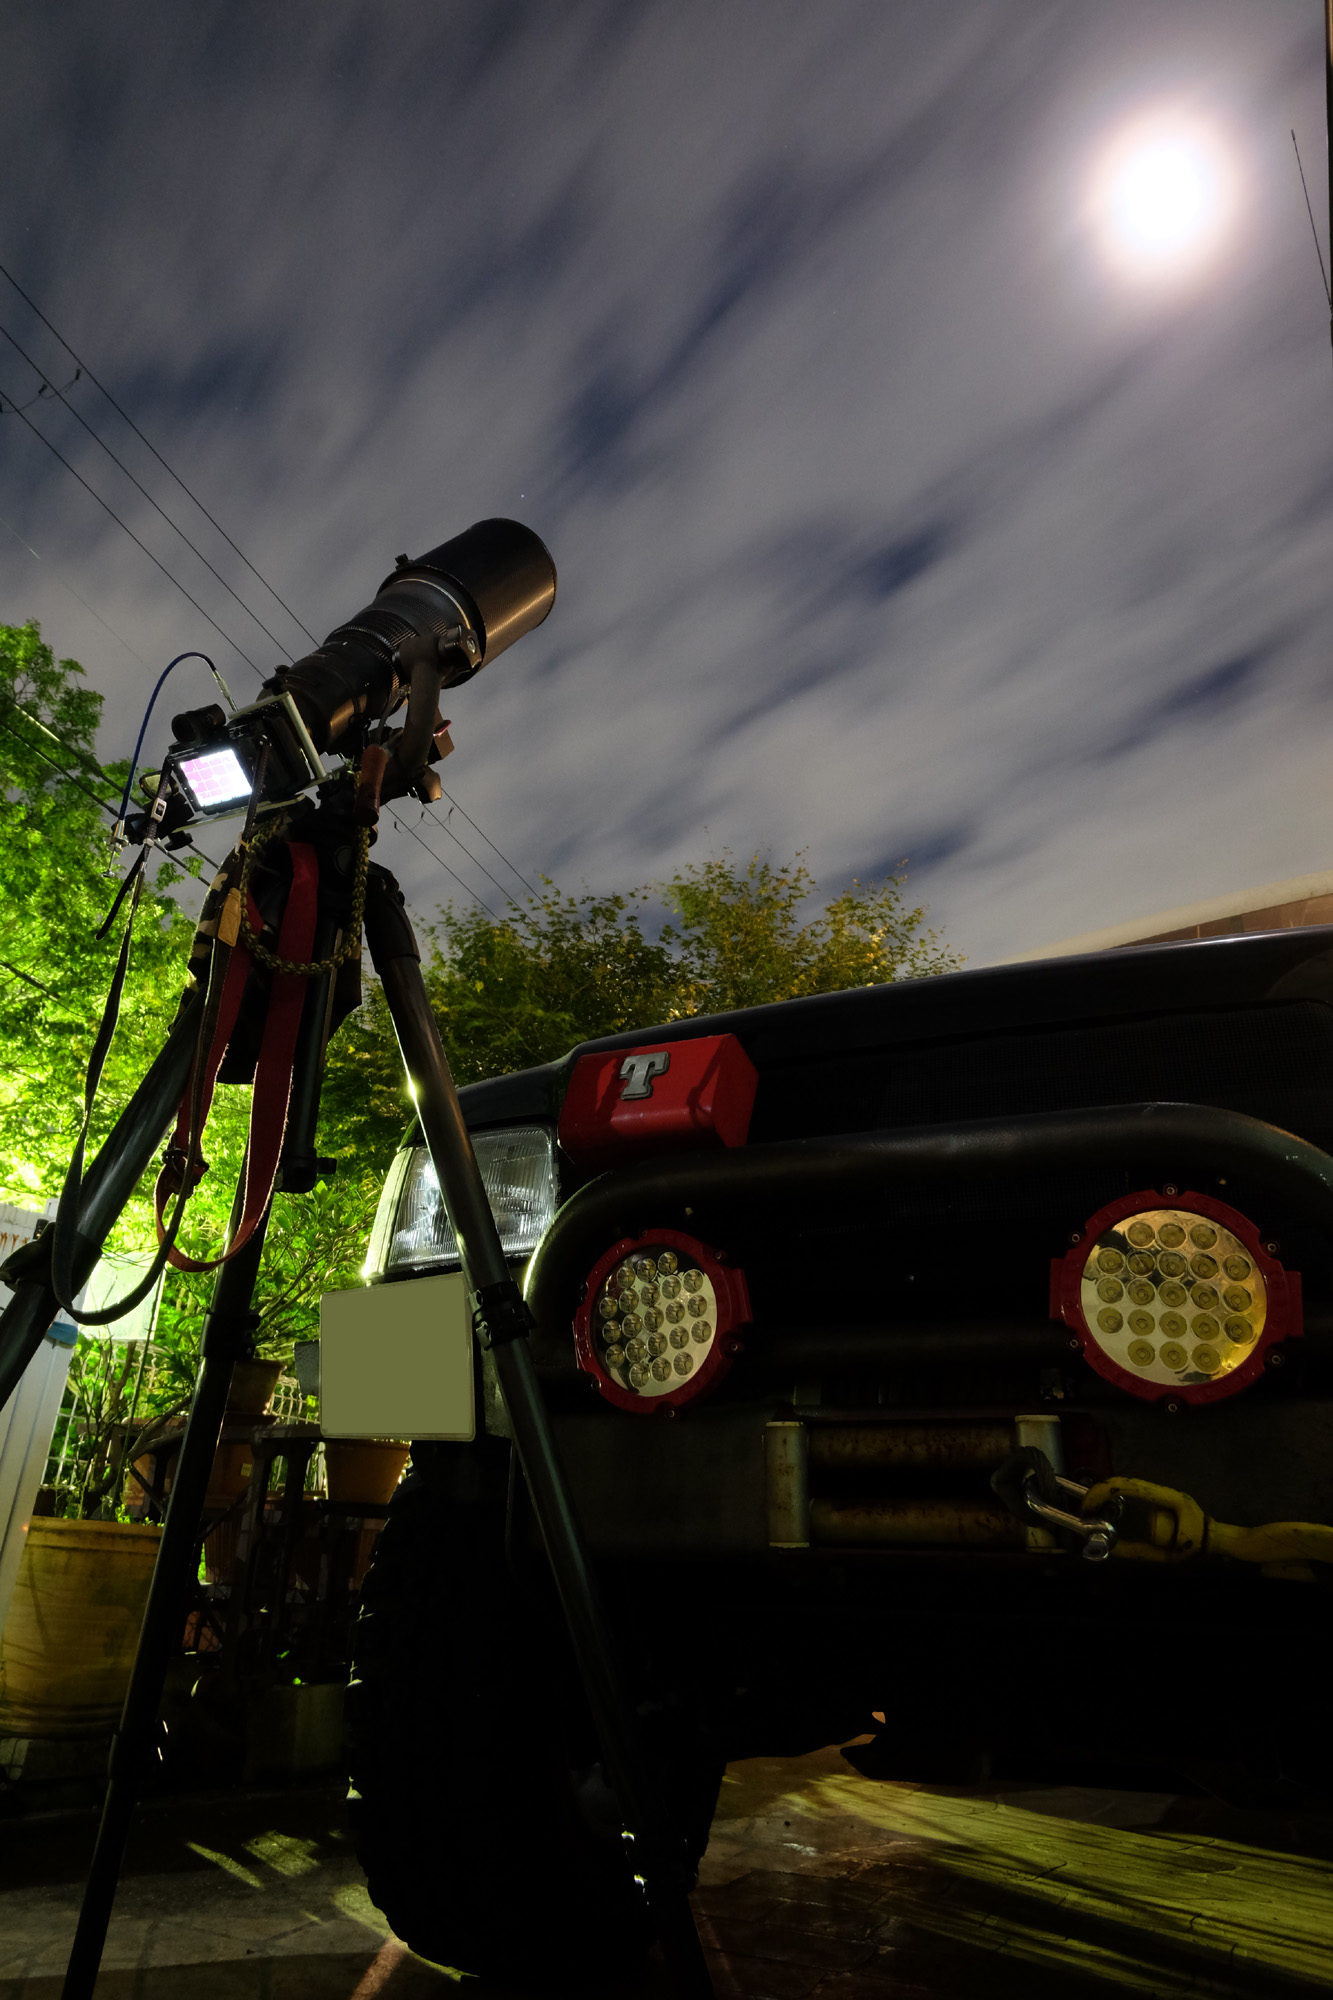 ニコワンとゴーヨンで月を撮る。Nikon1 V3 + FT-1 + AF-S 500mm F4 + TC-14E 1890mm相当ノートリミング